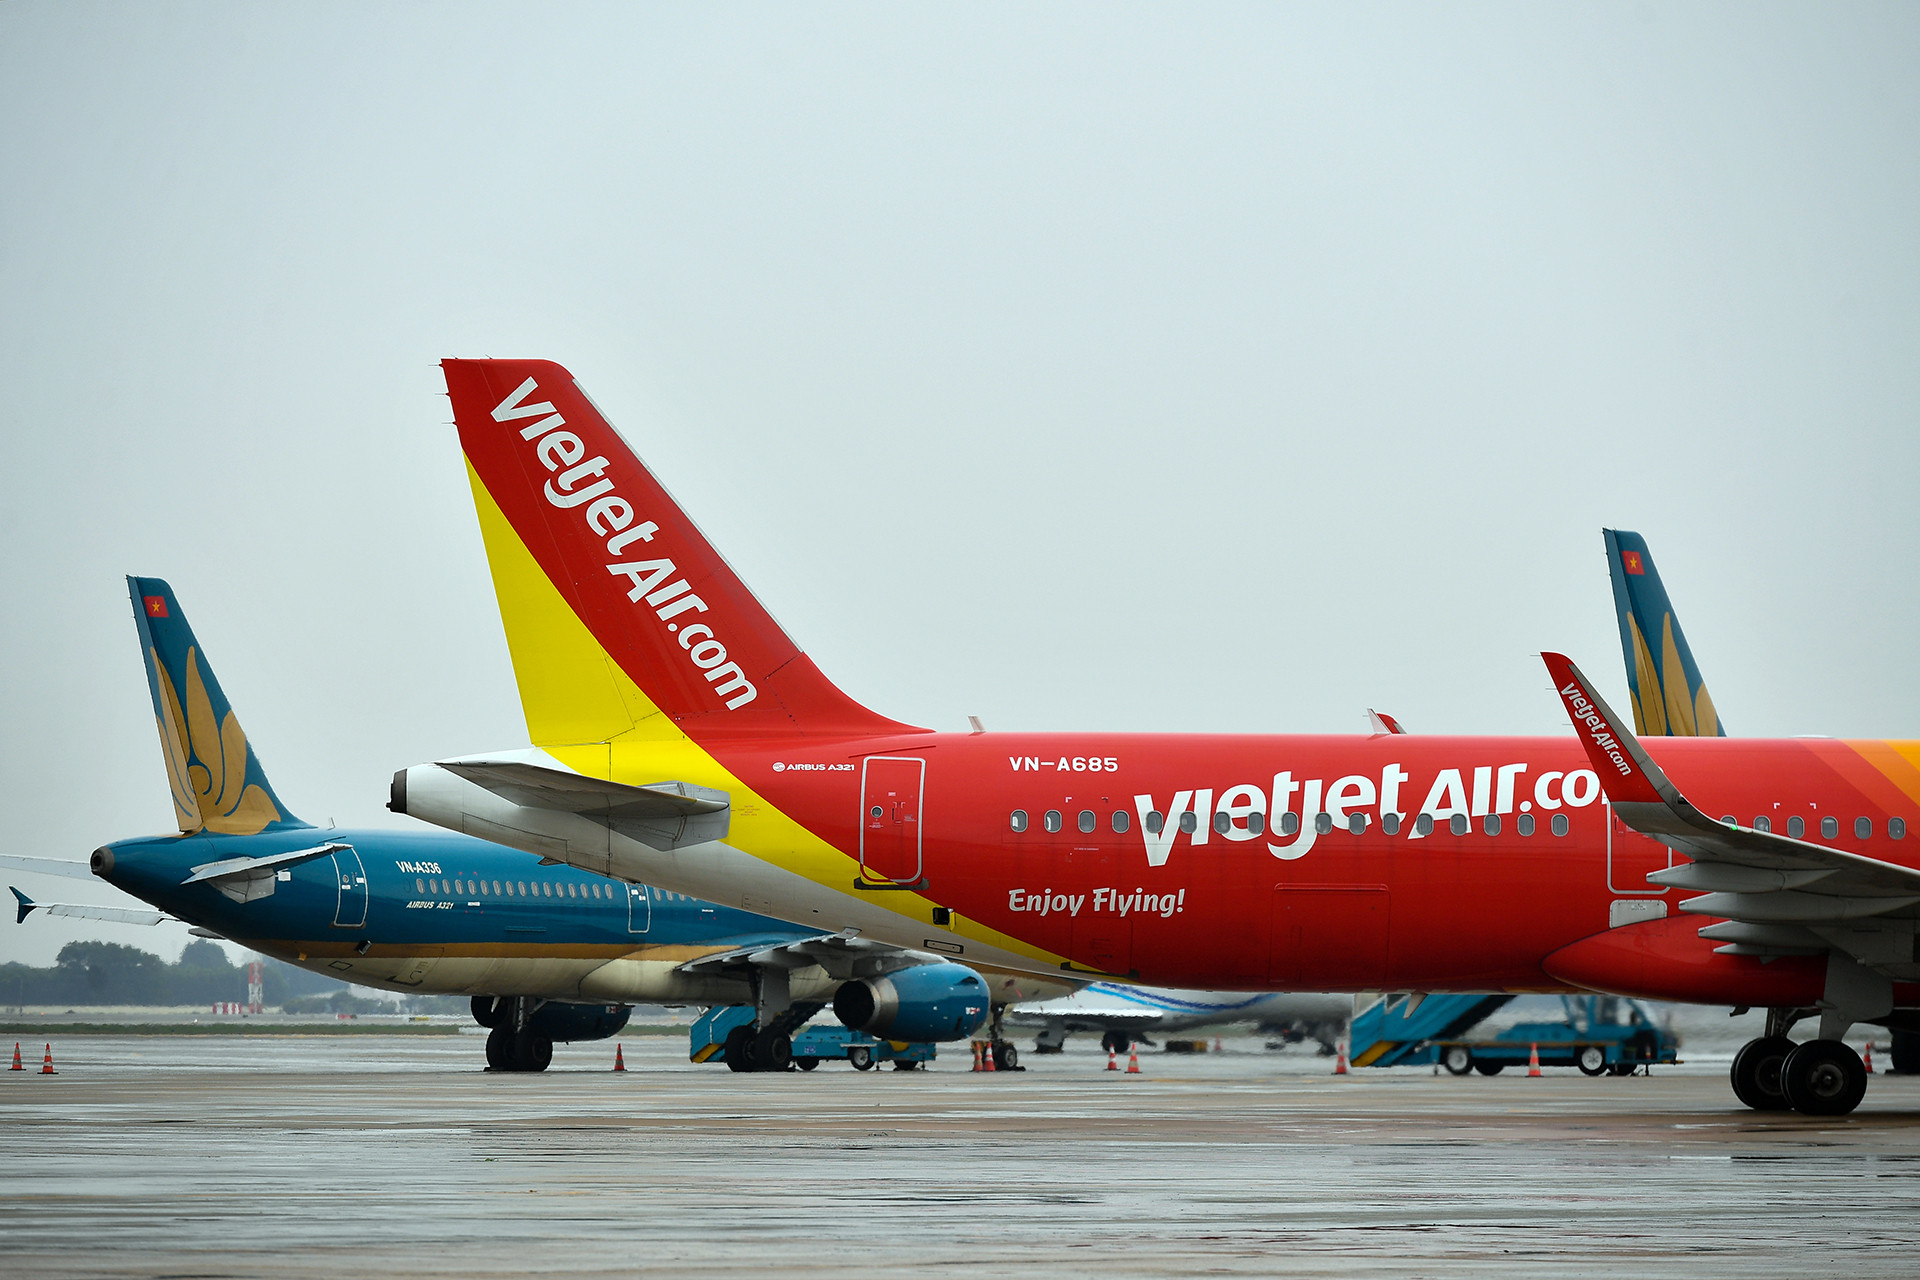 Hàng không khởi sắc: VietJet của tỷ phú Phương Thảo có lãi, Vietnam Airlines bớt lỗ